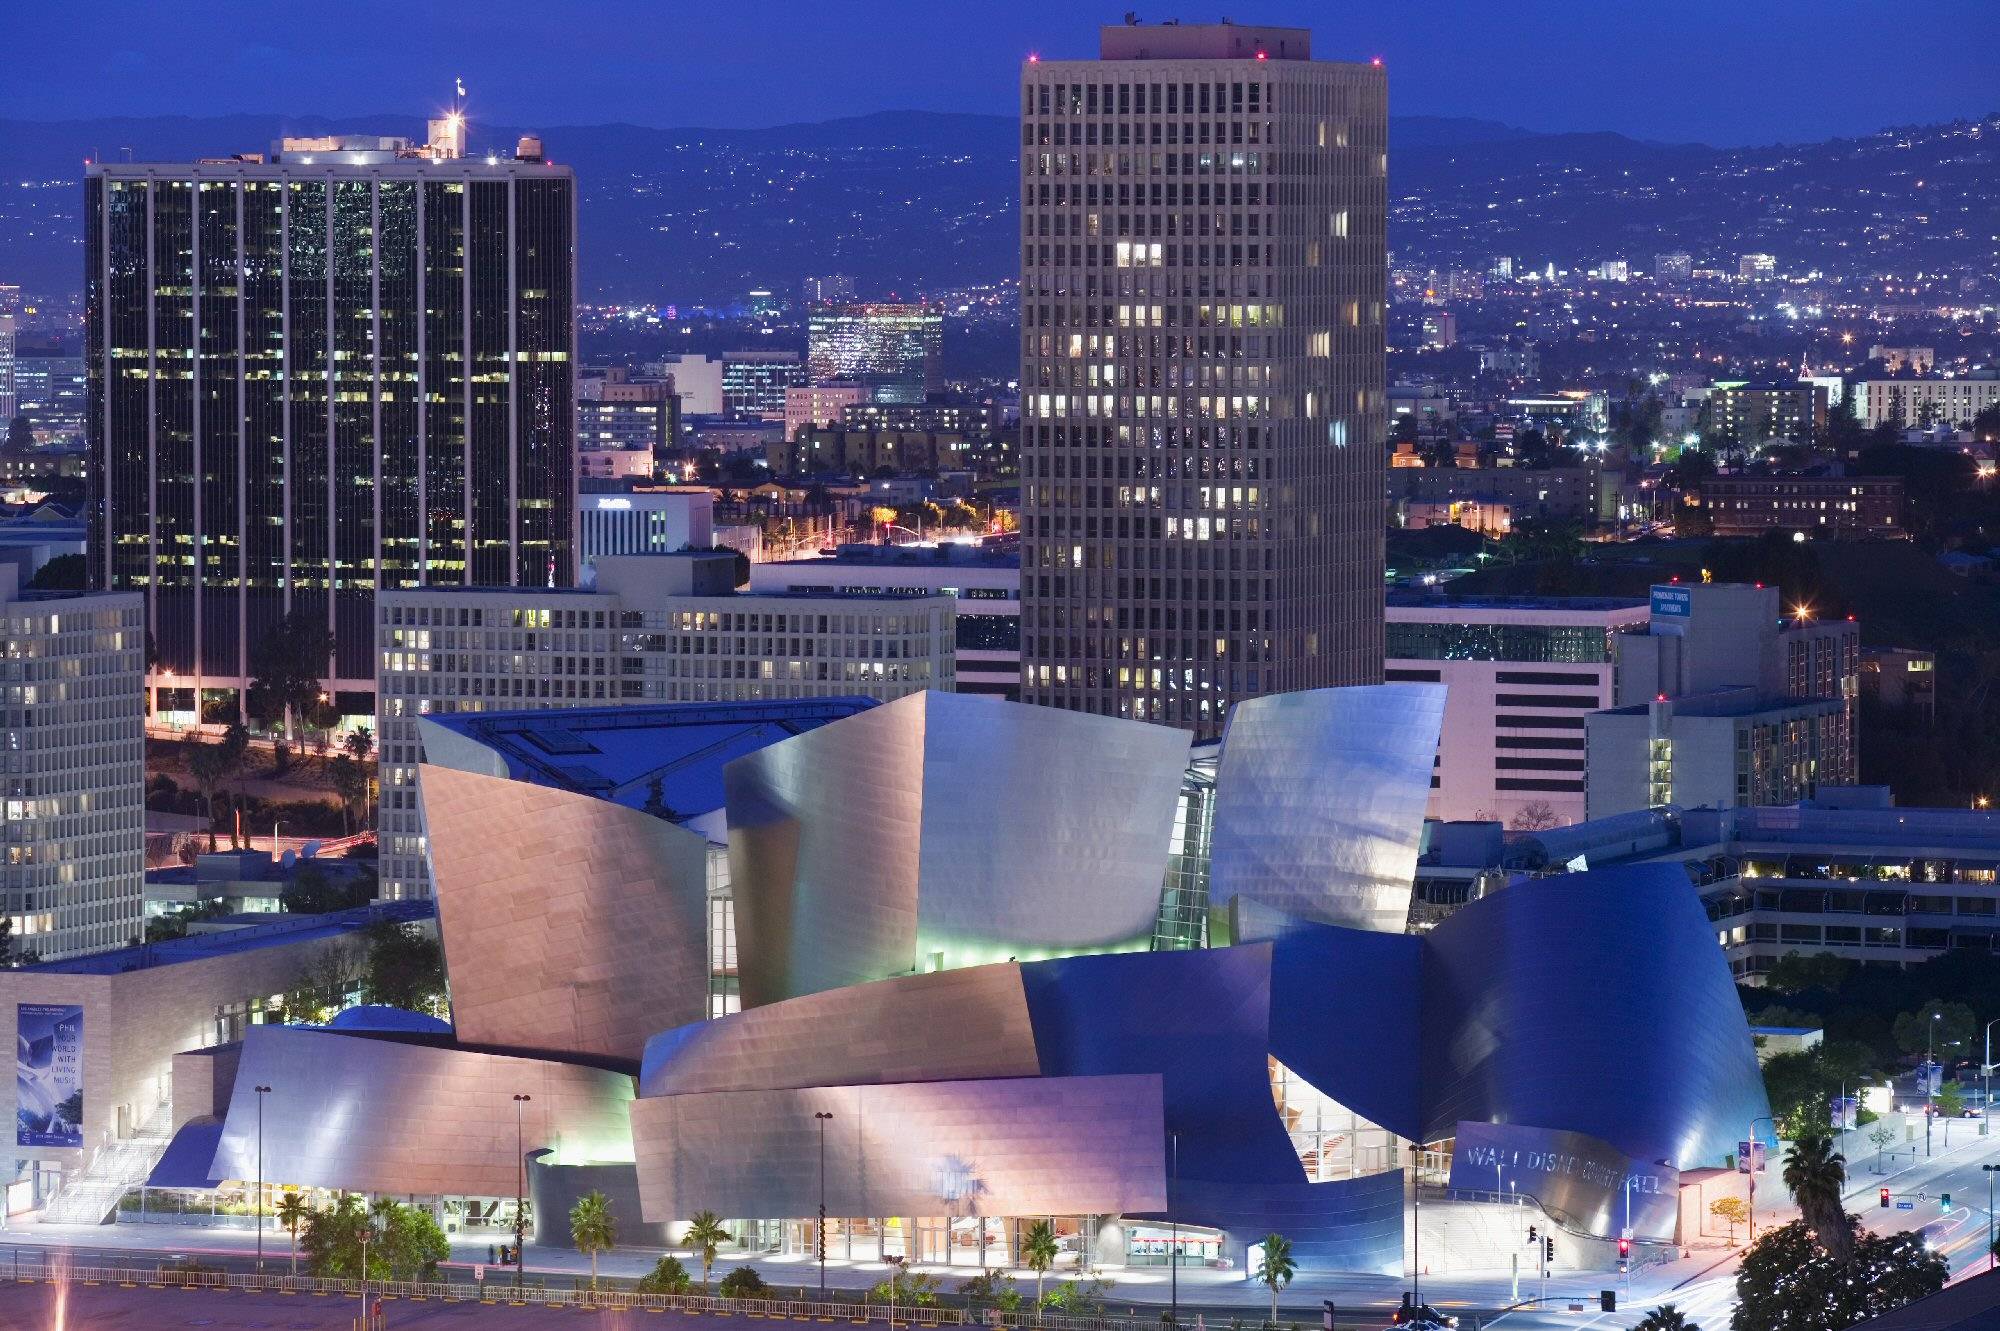 Зал уолта диснея. Концертный зал Уолта Диснея в Лос-Анджелесе, США. Фрэнк Гери концертный зал Диснея в Лос Анджелесе. Концертный зал имени Уолта Диснея Лос-Анджелес. Концертный зал Уолта Диснея в Лос-Анджелесе архитектура.